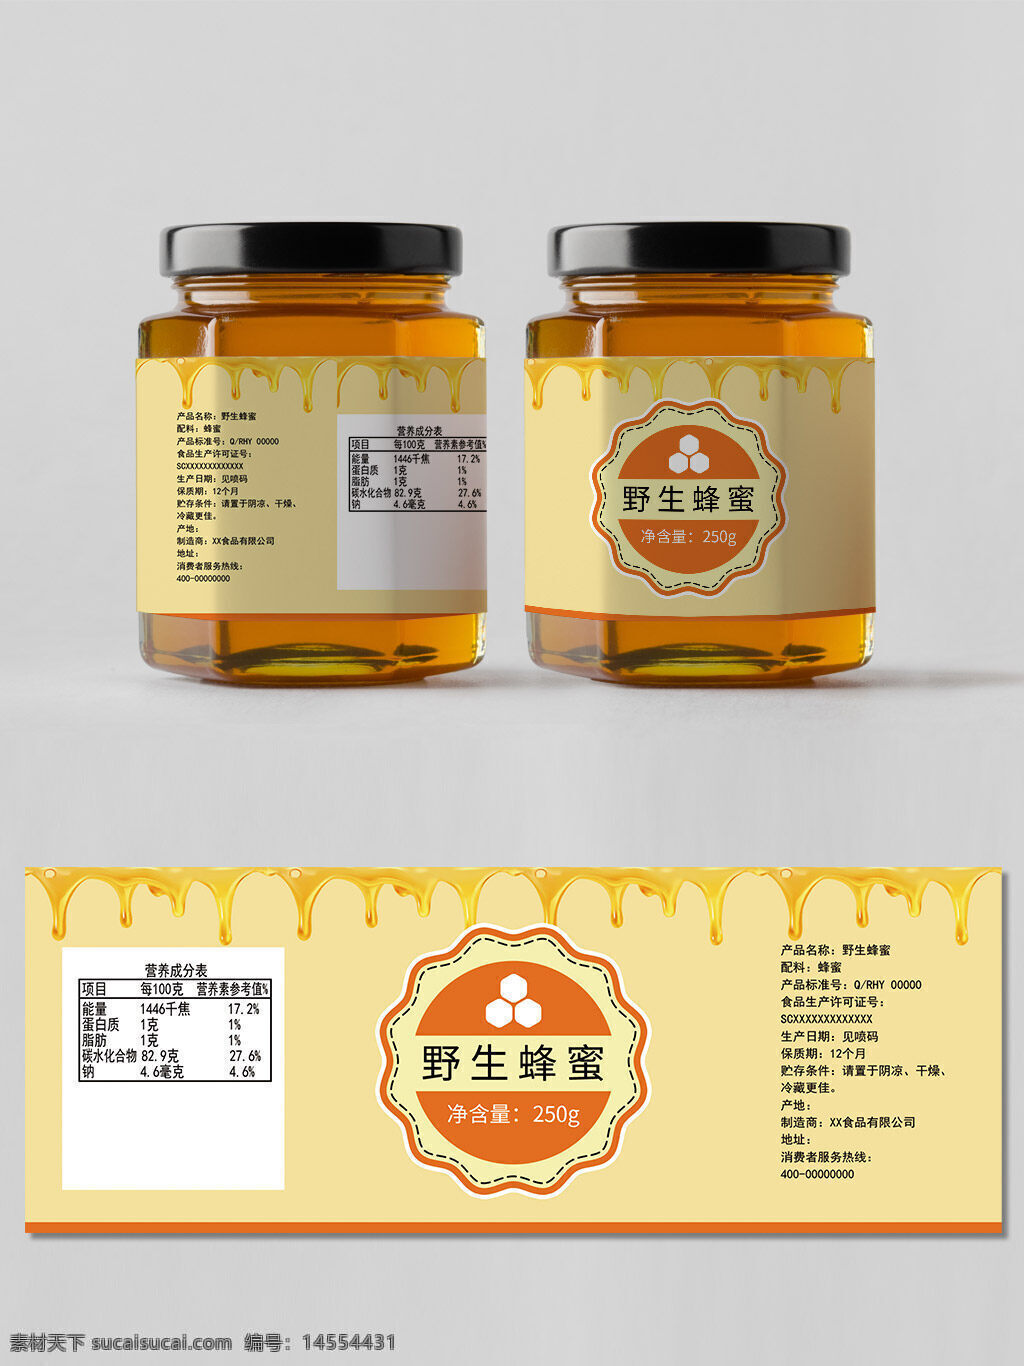 蜂蜜 食物 美食 食品包装 包装设计 包装模板 玻璃瓶包装 果酱包装 罐头包装